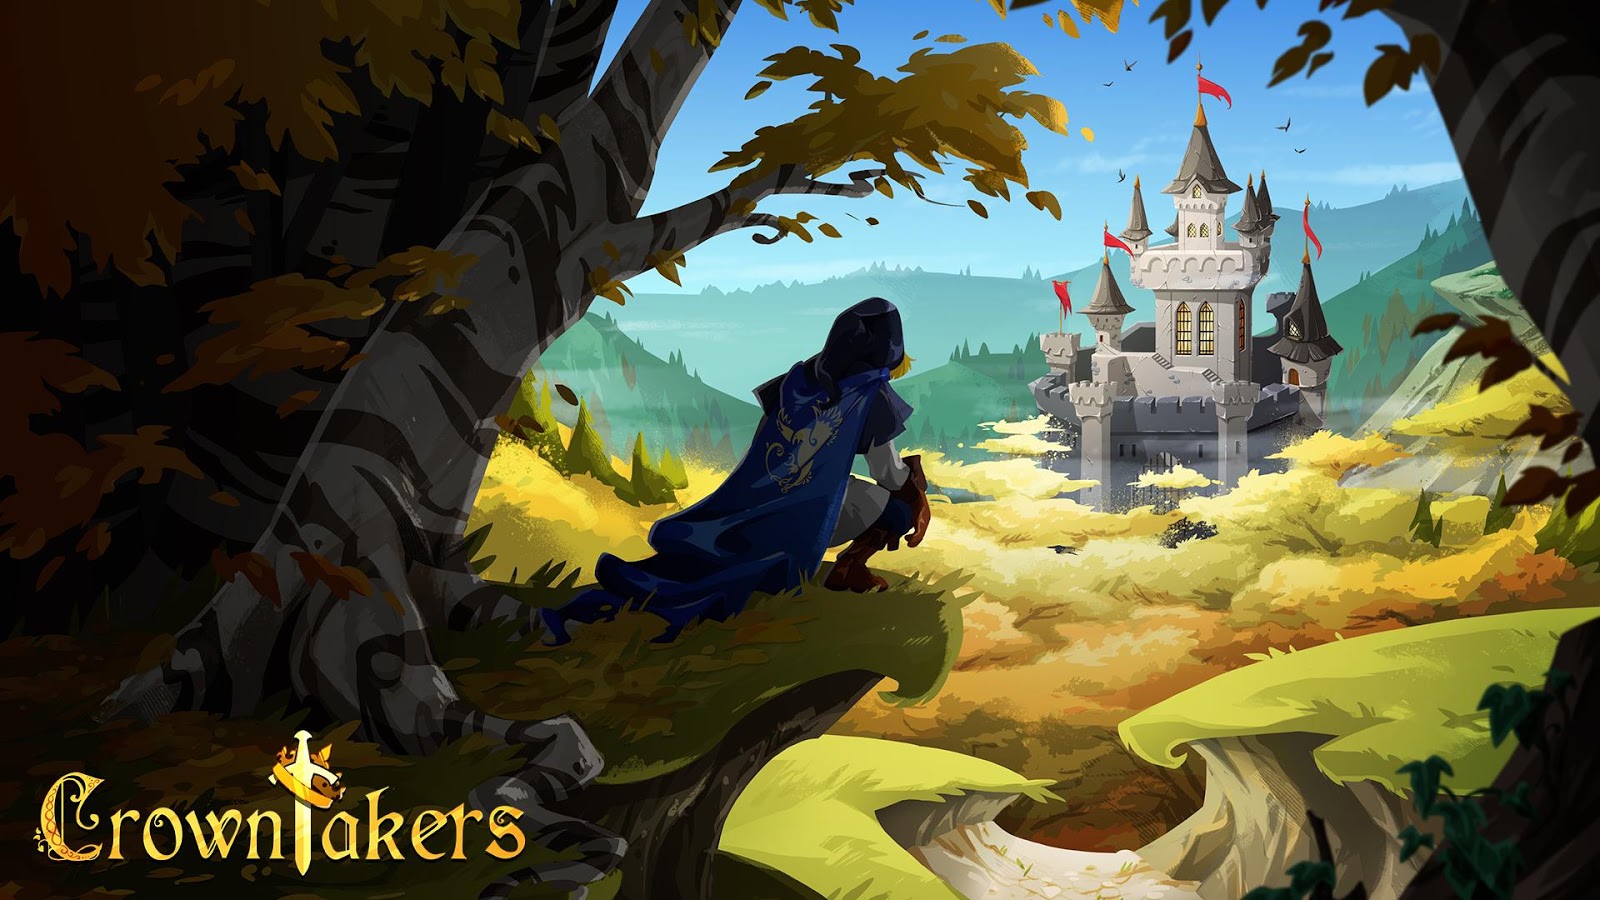    Crowntakers- screenshot  